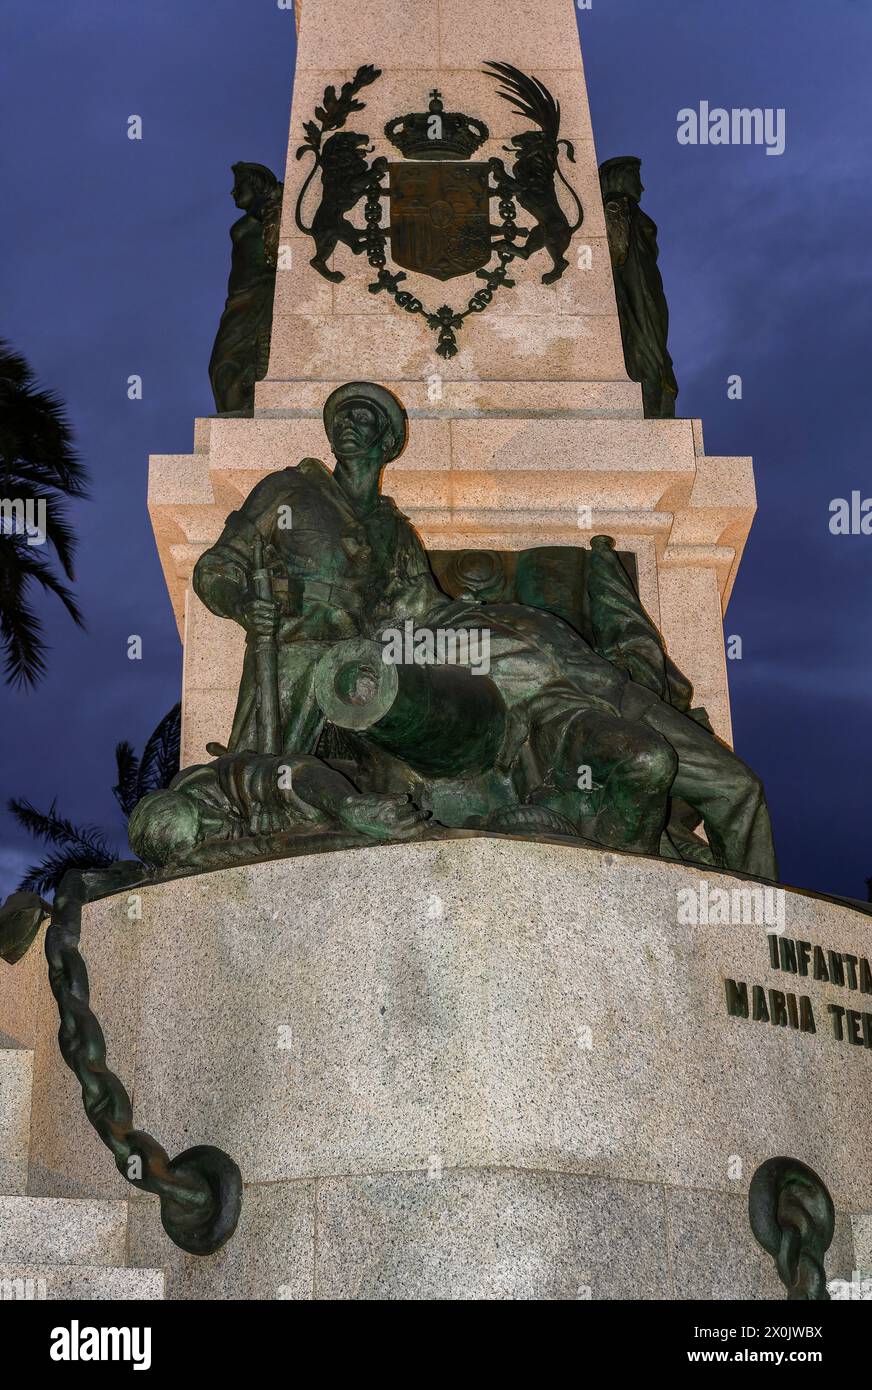 Monumento agli Eroi di Cavite e Santiago di Cuba, XX secolo, gruppo scultoreo nel porto della città spagnola di Cartagena, Murcia, Spagna. Foto Stock